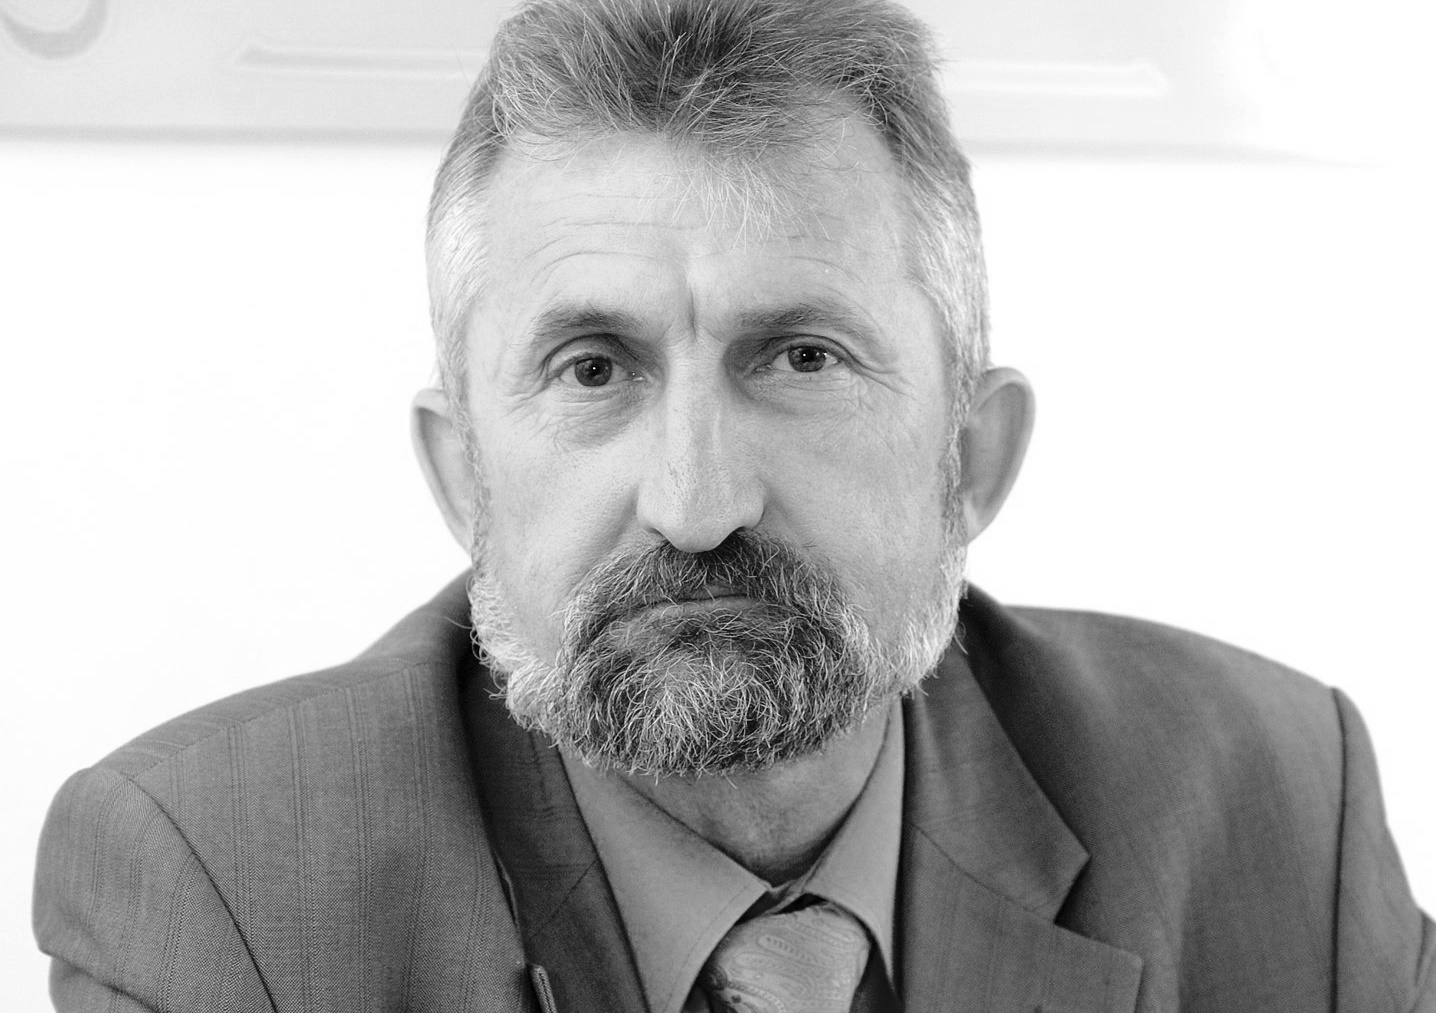 Скончался омский политолог, преподаватель и экс-депутат Михаил Машкарин